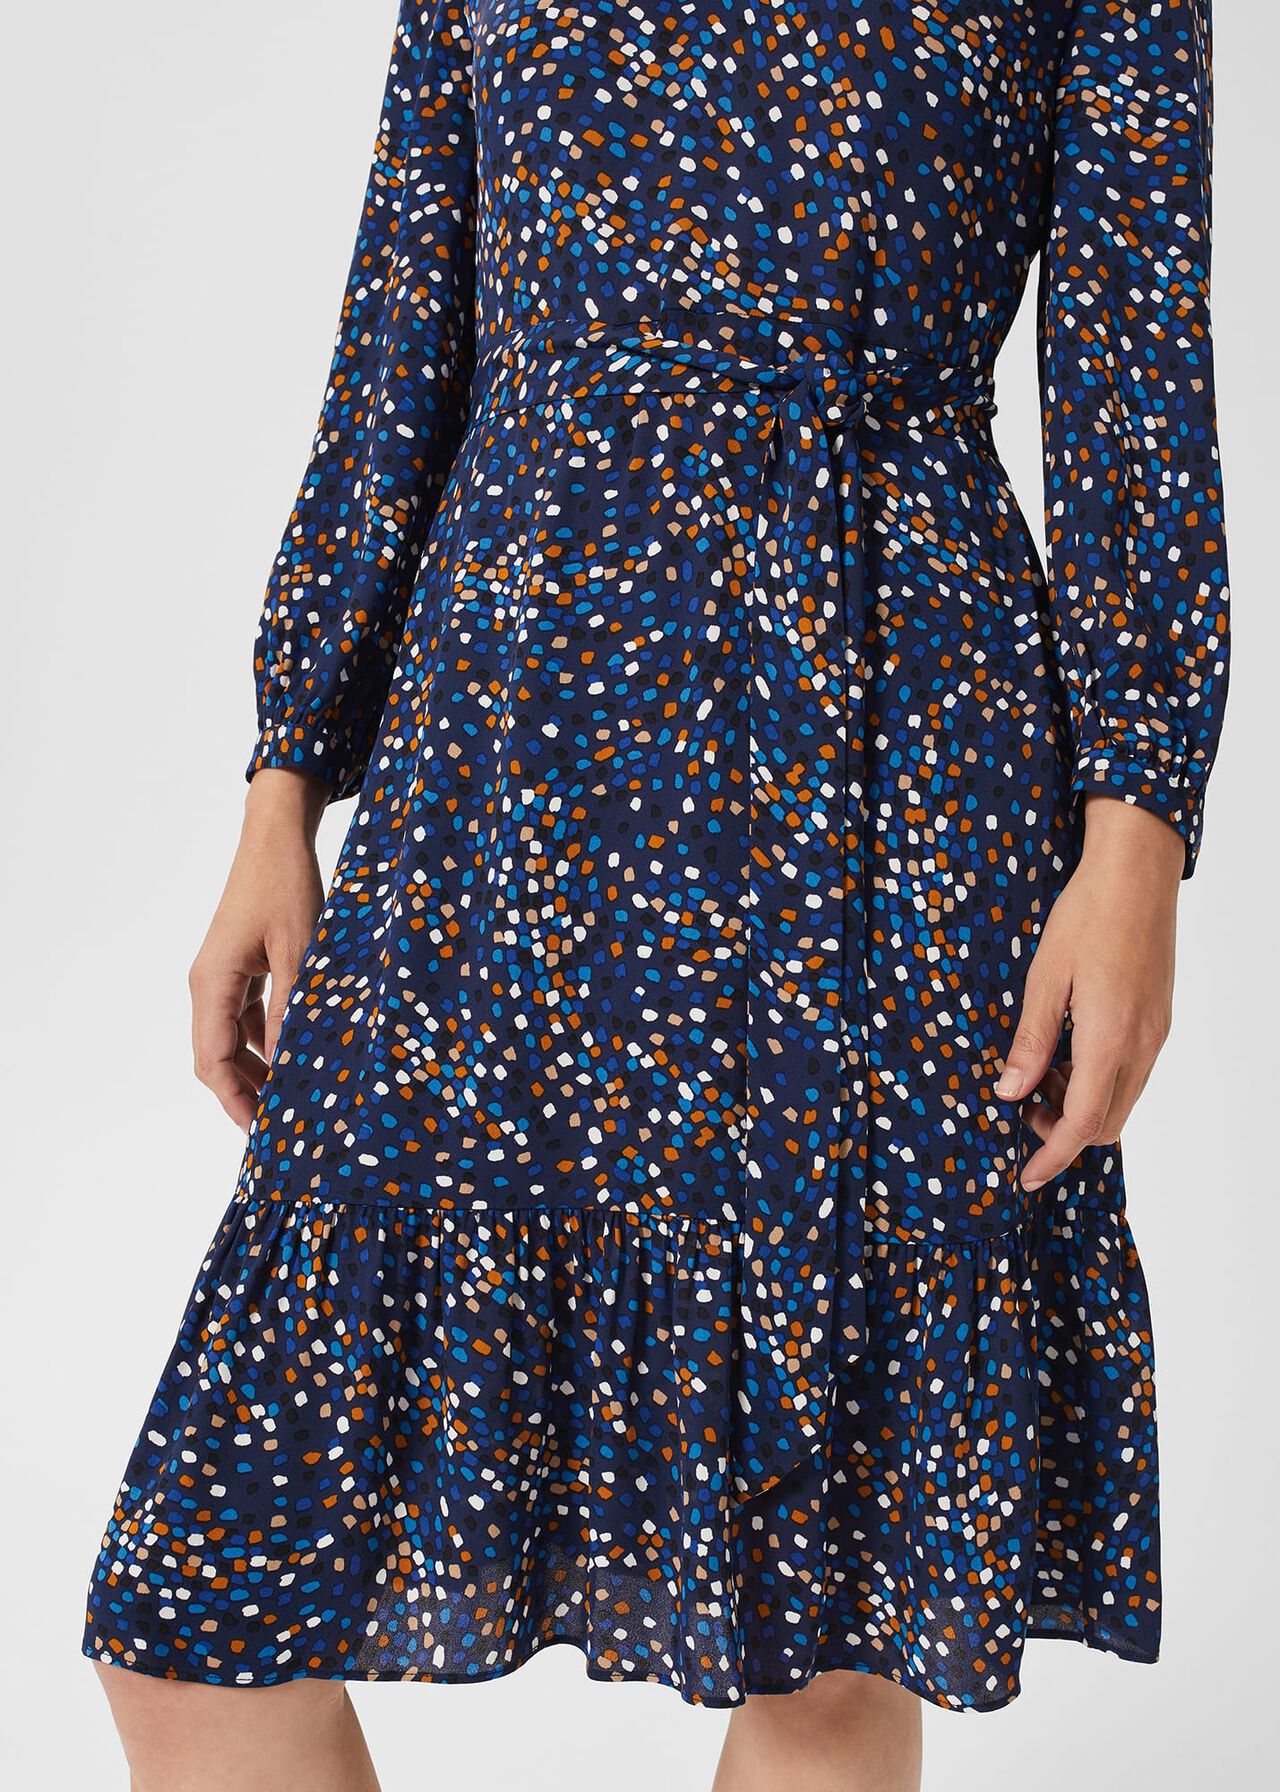 Petite Mallory Dress, Blue Multi, hi-res